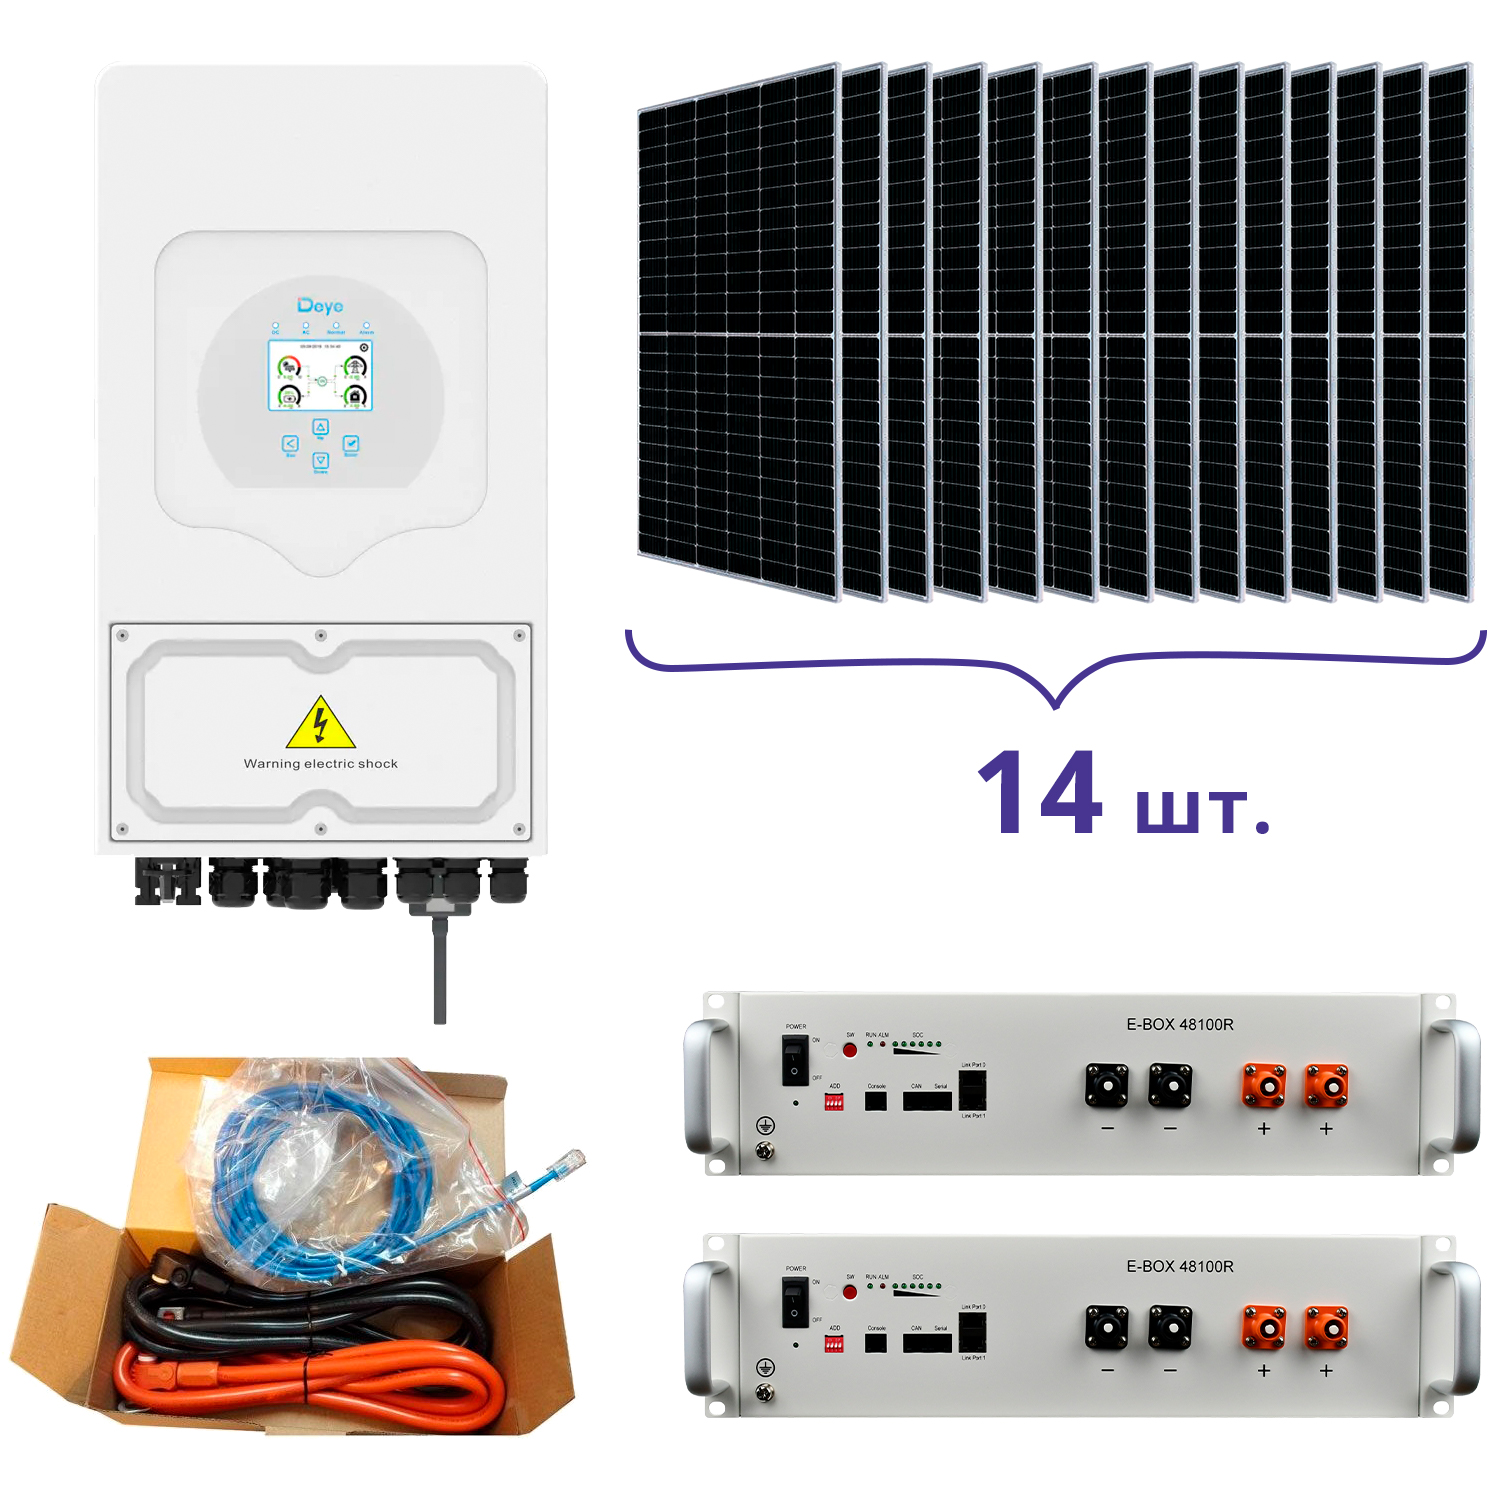 Відгуки система резервного живлення для дому Deye SUN-5K-SG03LP1-EU+Pytes E-BOX-48100R-2шт.+Battery Cable Kit-1шт.+JA Solar JAM72S20-460/MR 460 Wp, Mono-14шт. в Україні